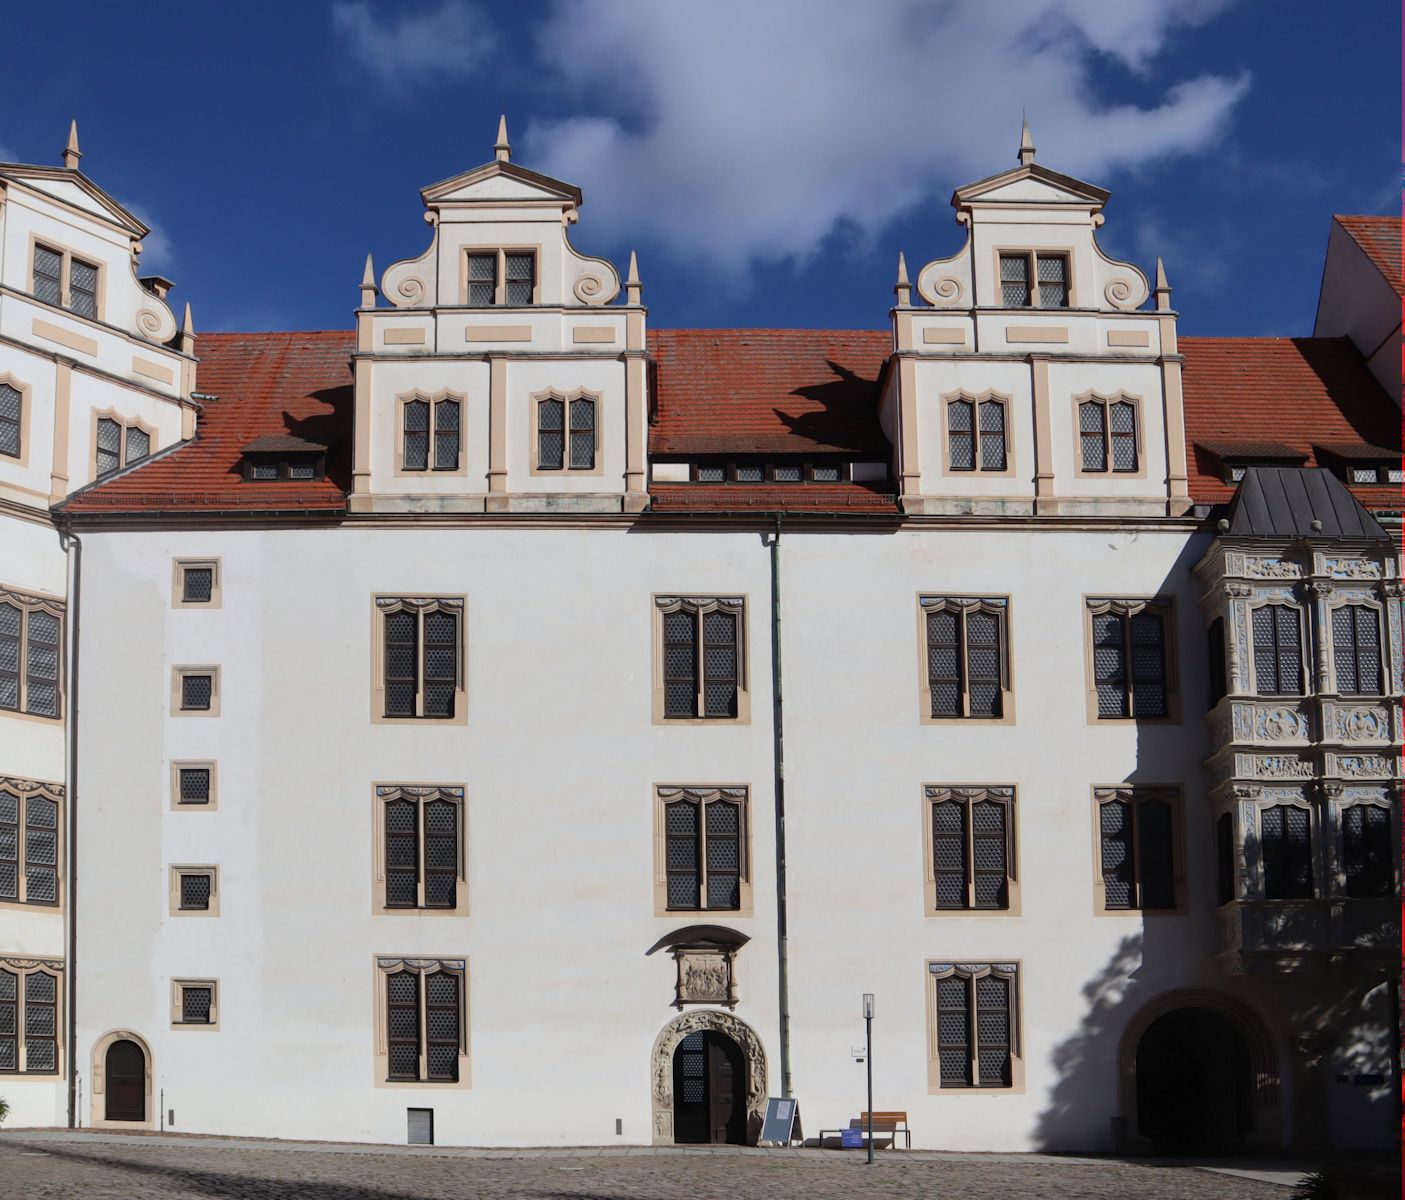 der erste protestantische Kirchenbau: die Kapelle im Schloss Hartenfels in Torgau